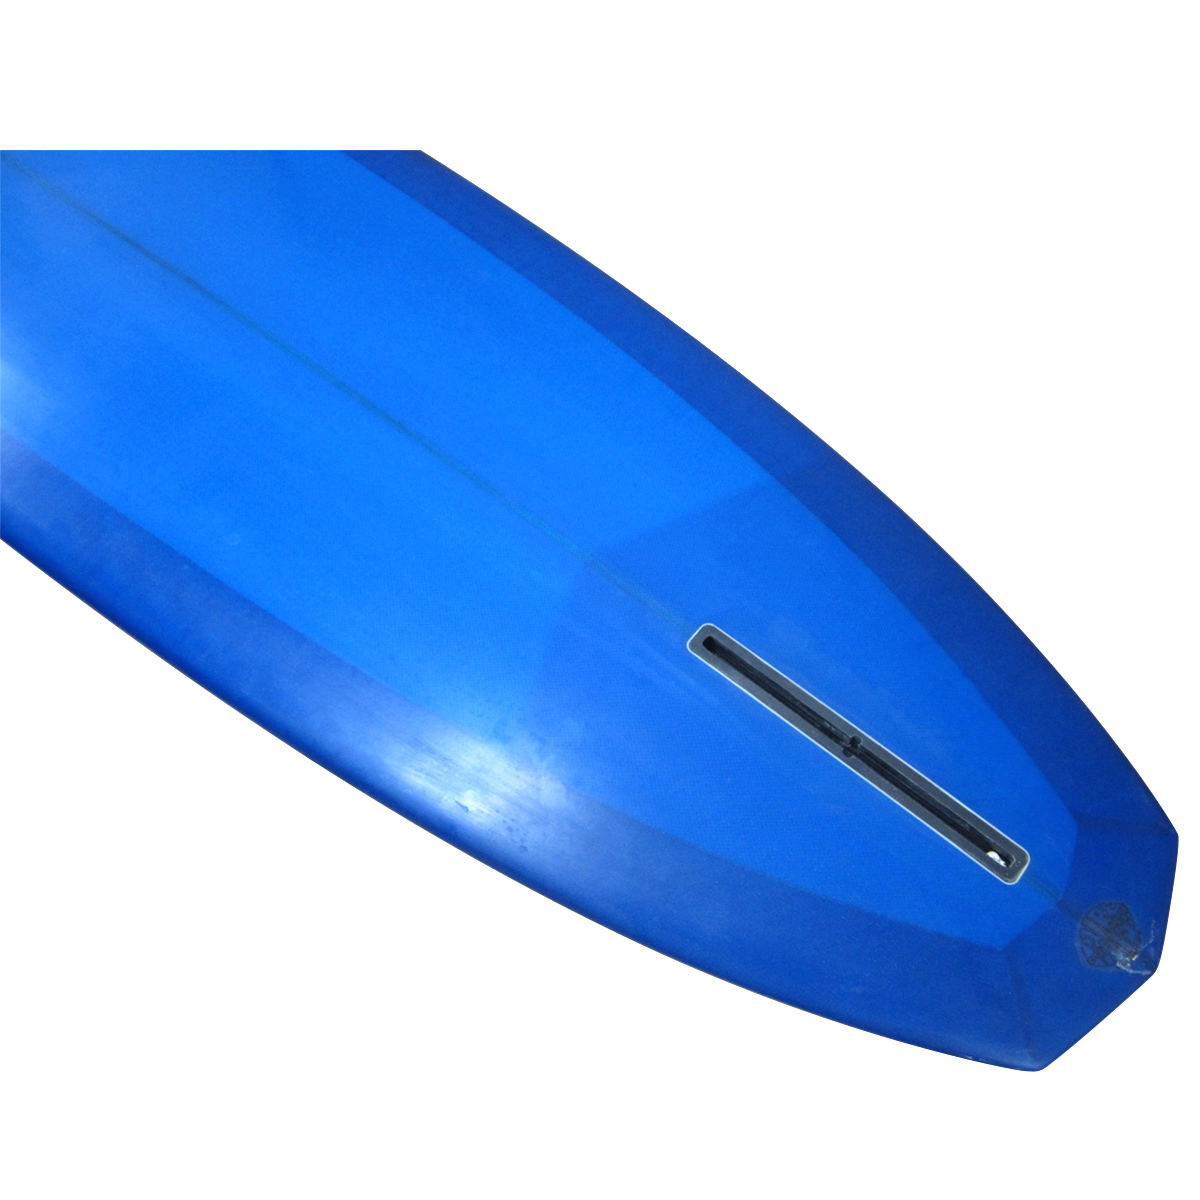 EC Surfboards /  9`4 PISTOLERO